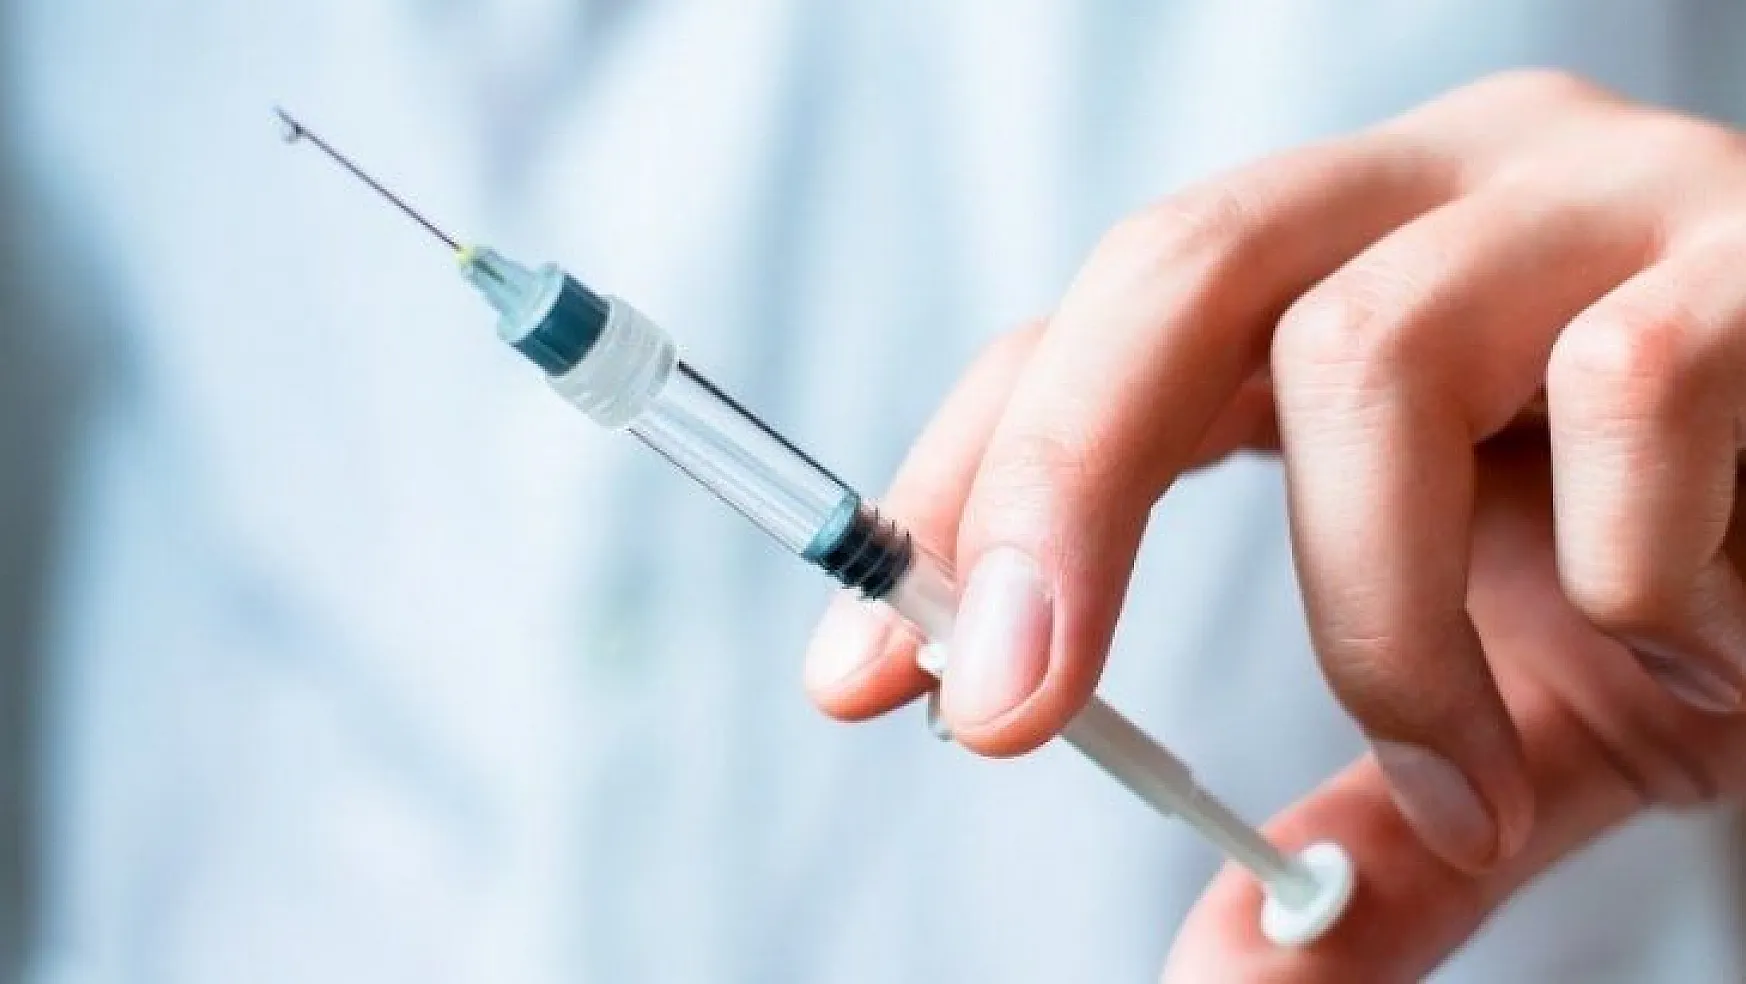 Sağlıklıya grip, risk grubuna hem grip hem zatürre aşısı